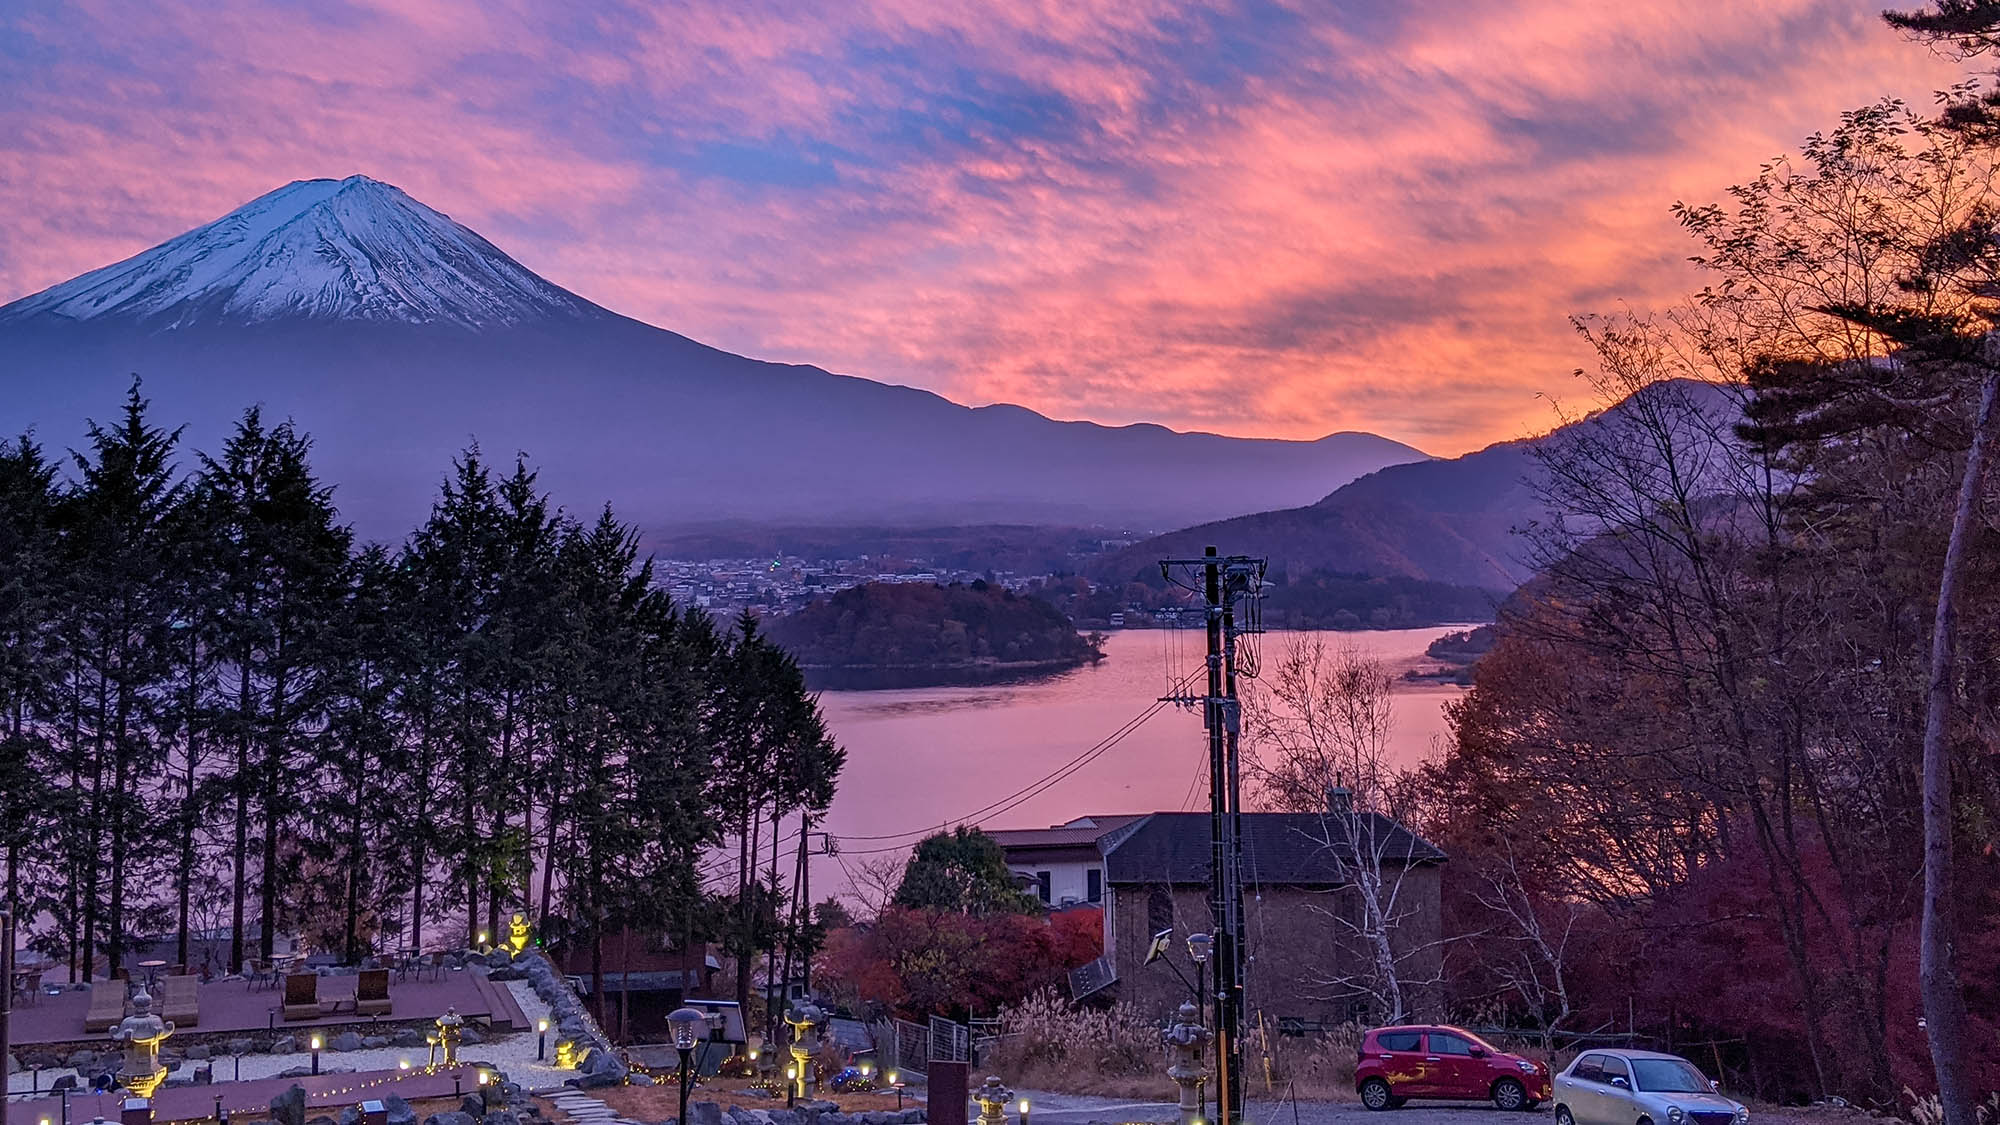 ・湖面を赤く染める夕日と富士山のコントラストは1枚の絵画のよう